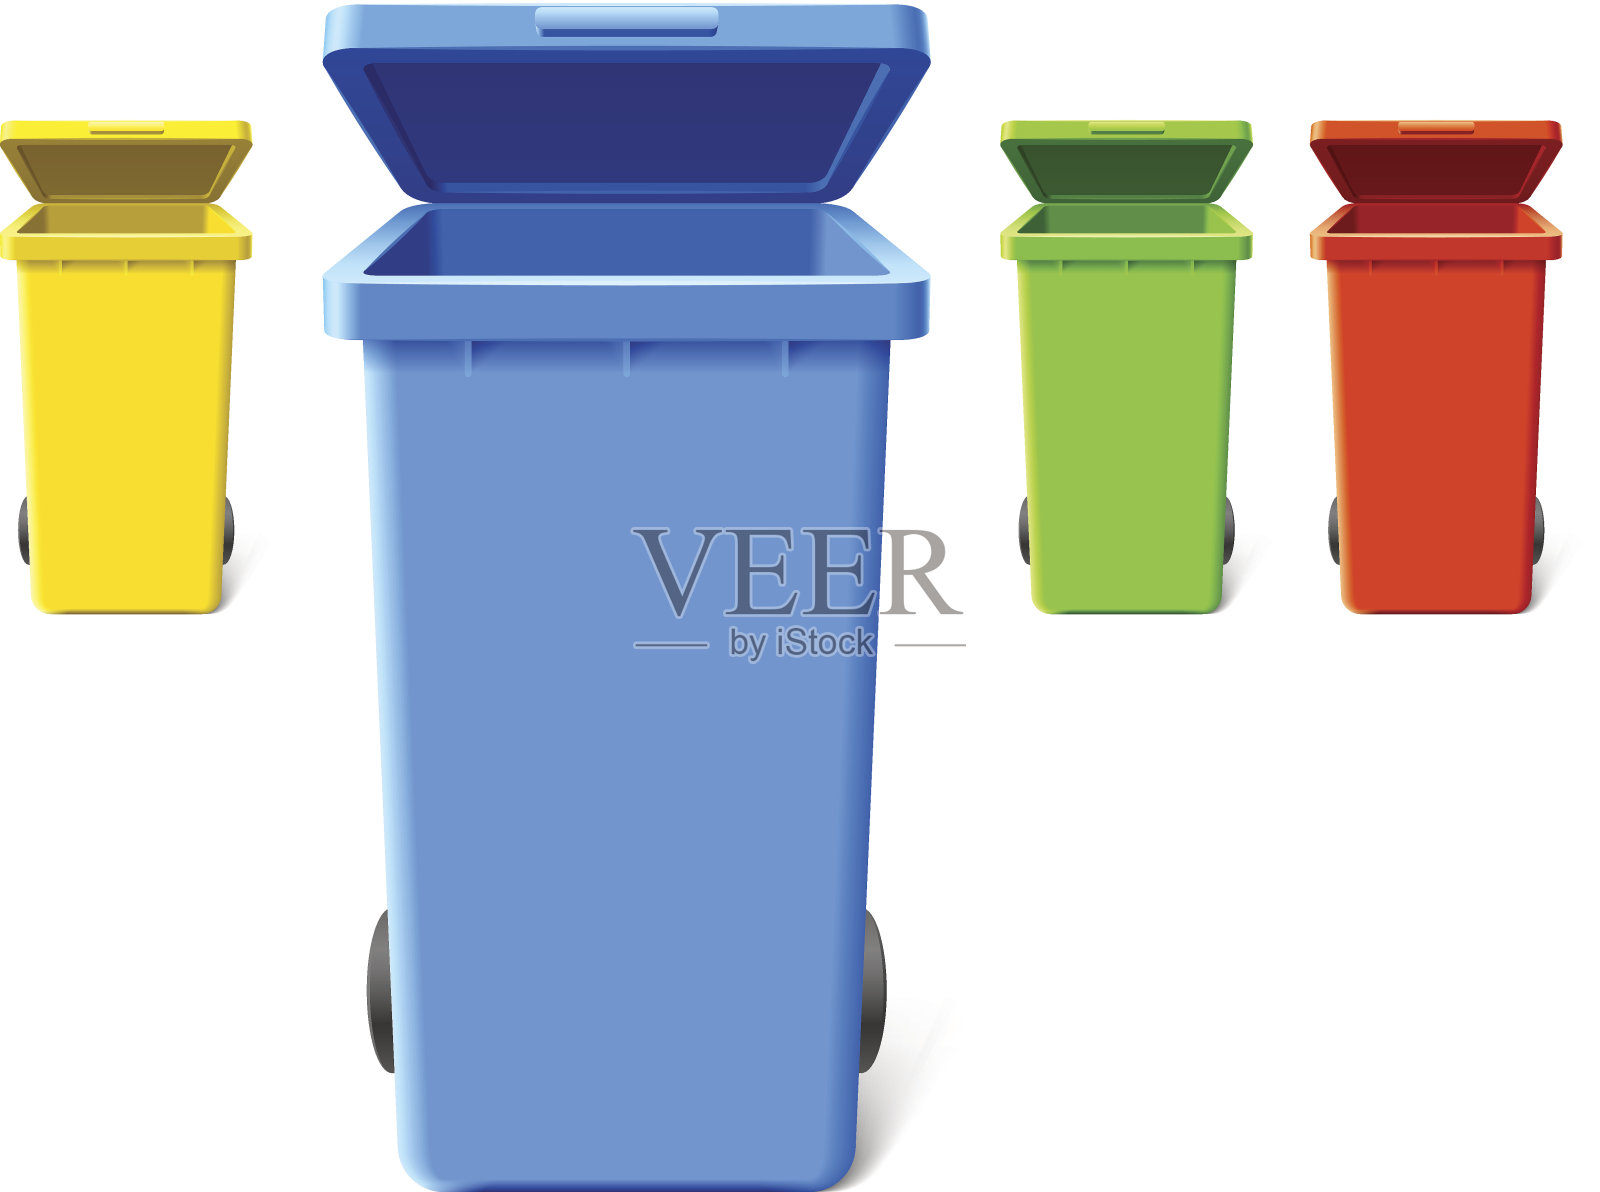 色彩斑斓的垃圾箱设计元素图片